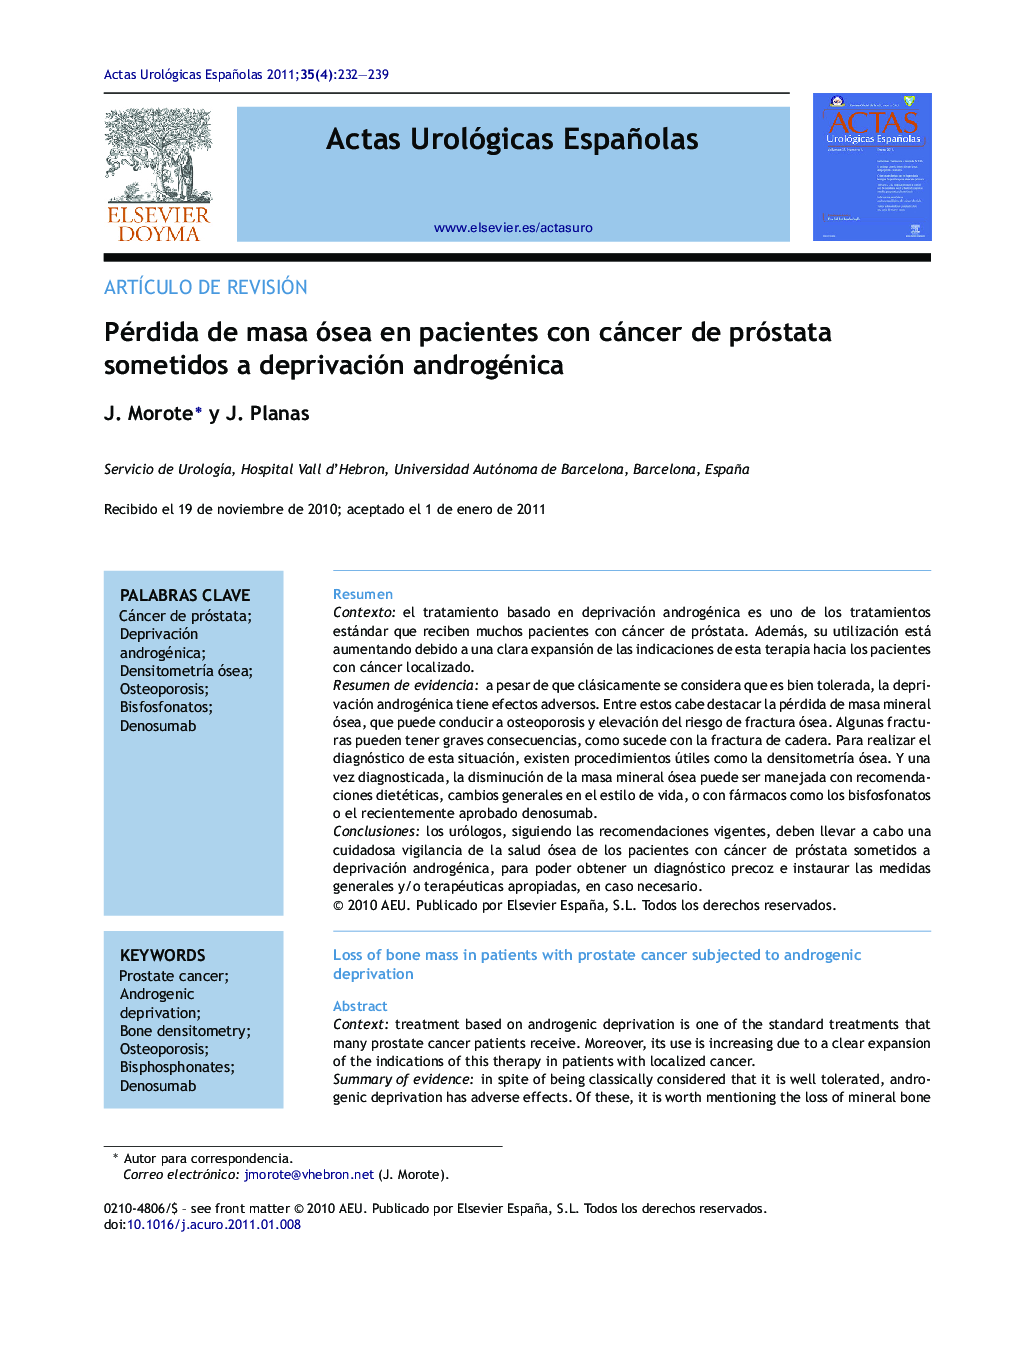 Pérdida de masa ósea en pacientes con cáncer de próstata sometidos a deprivación androgénica